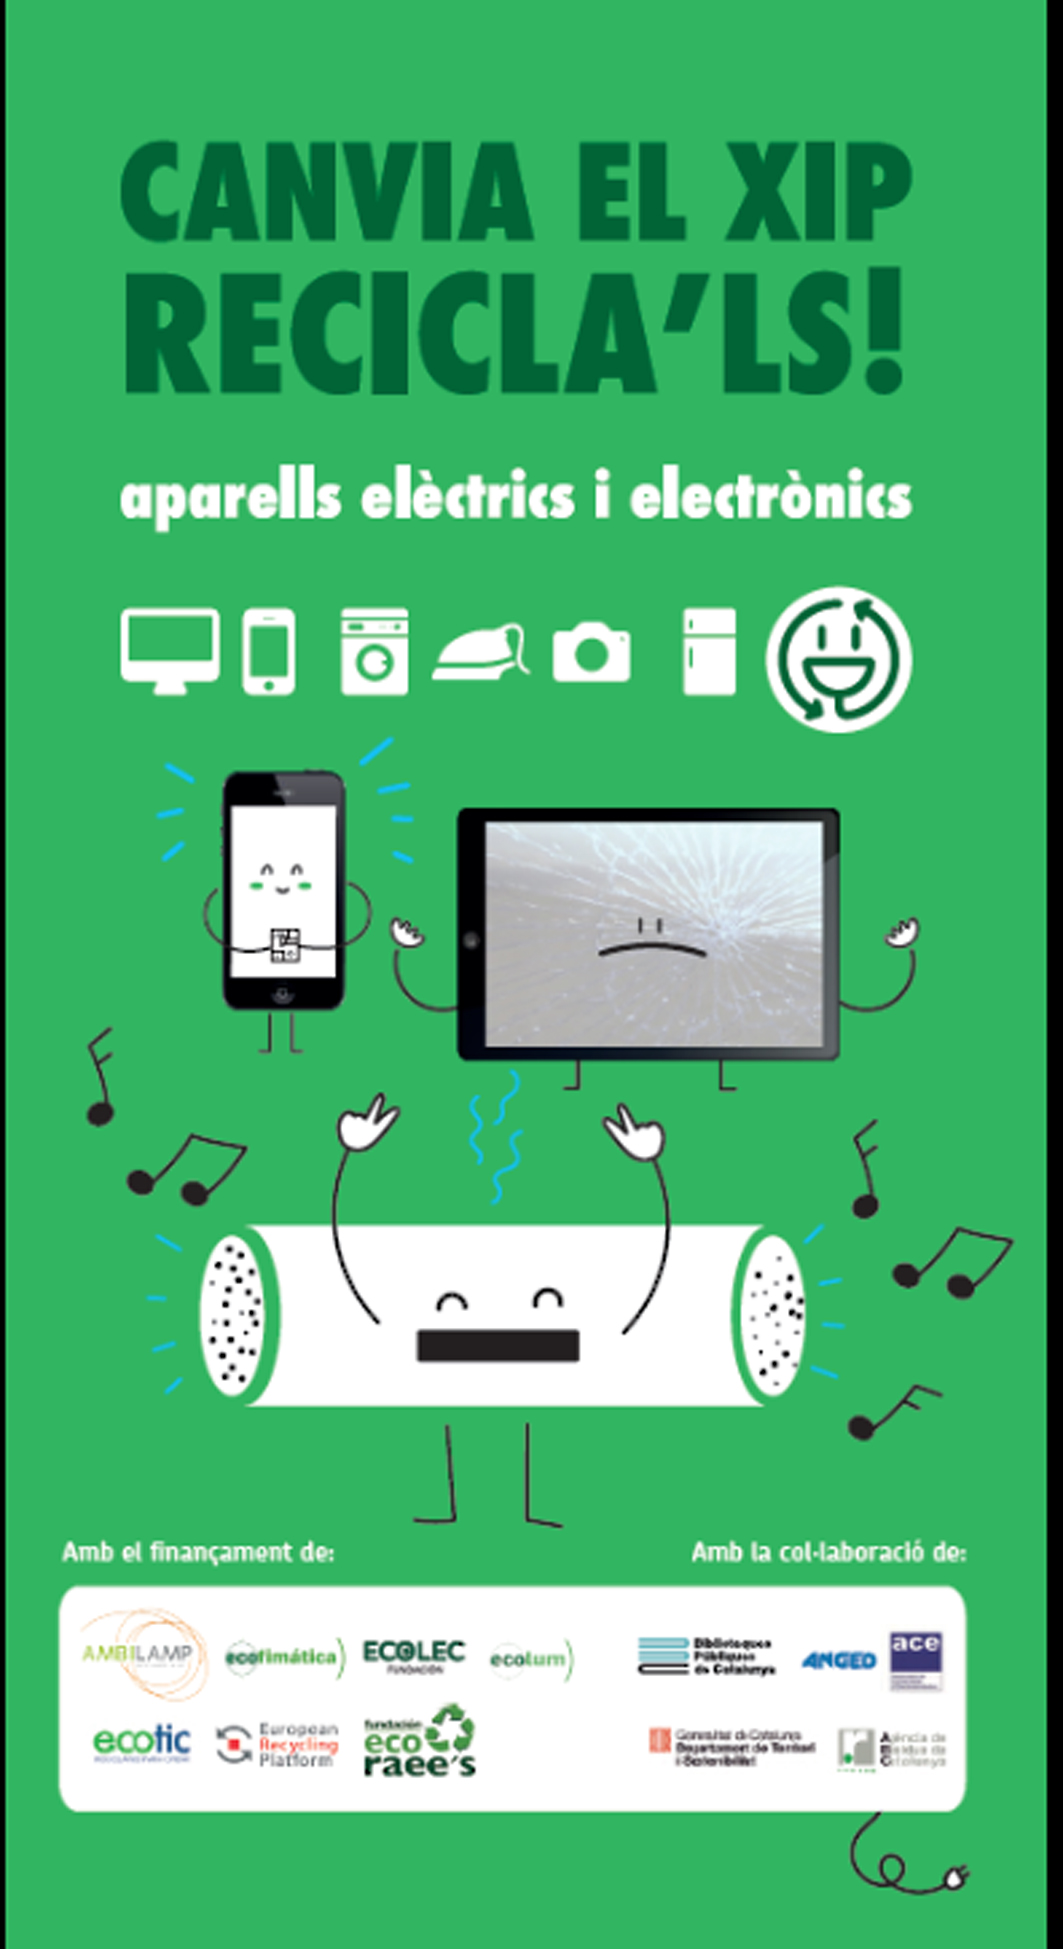 Campanya per fomentar d'aparells elèctrics i electrònics